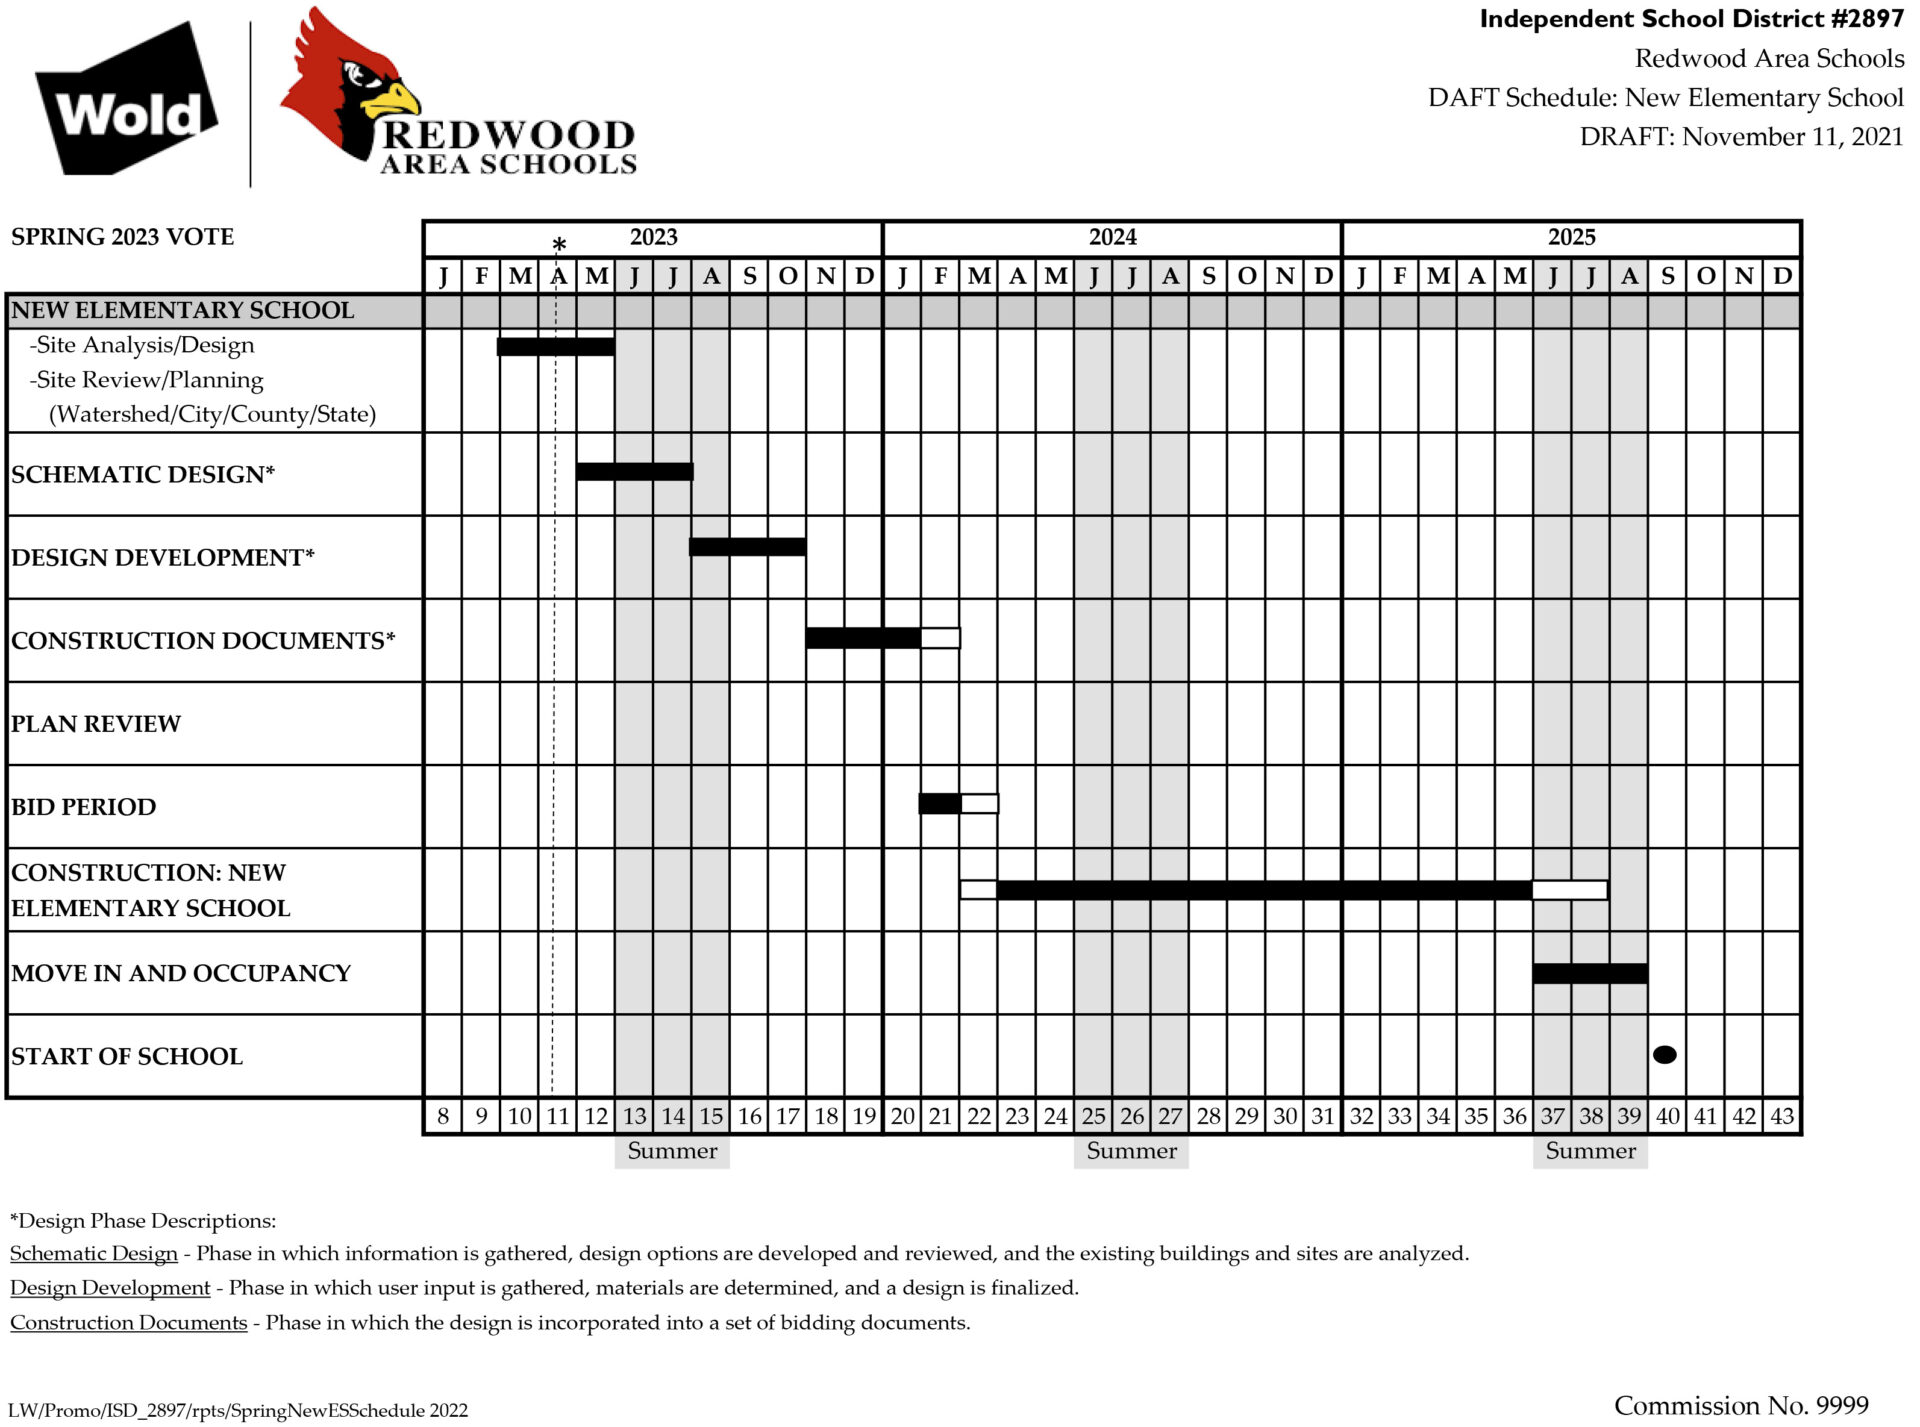 Redwood Area Schools New Elementary School Schedule April 2023